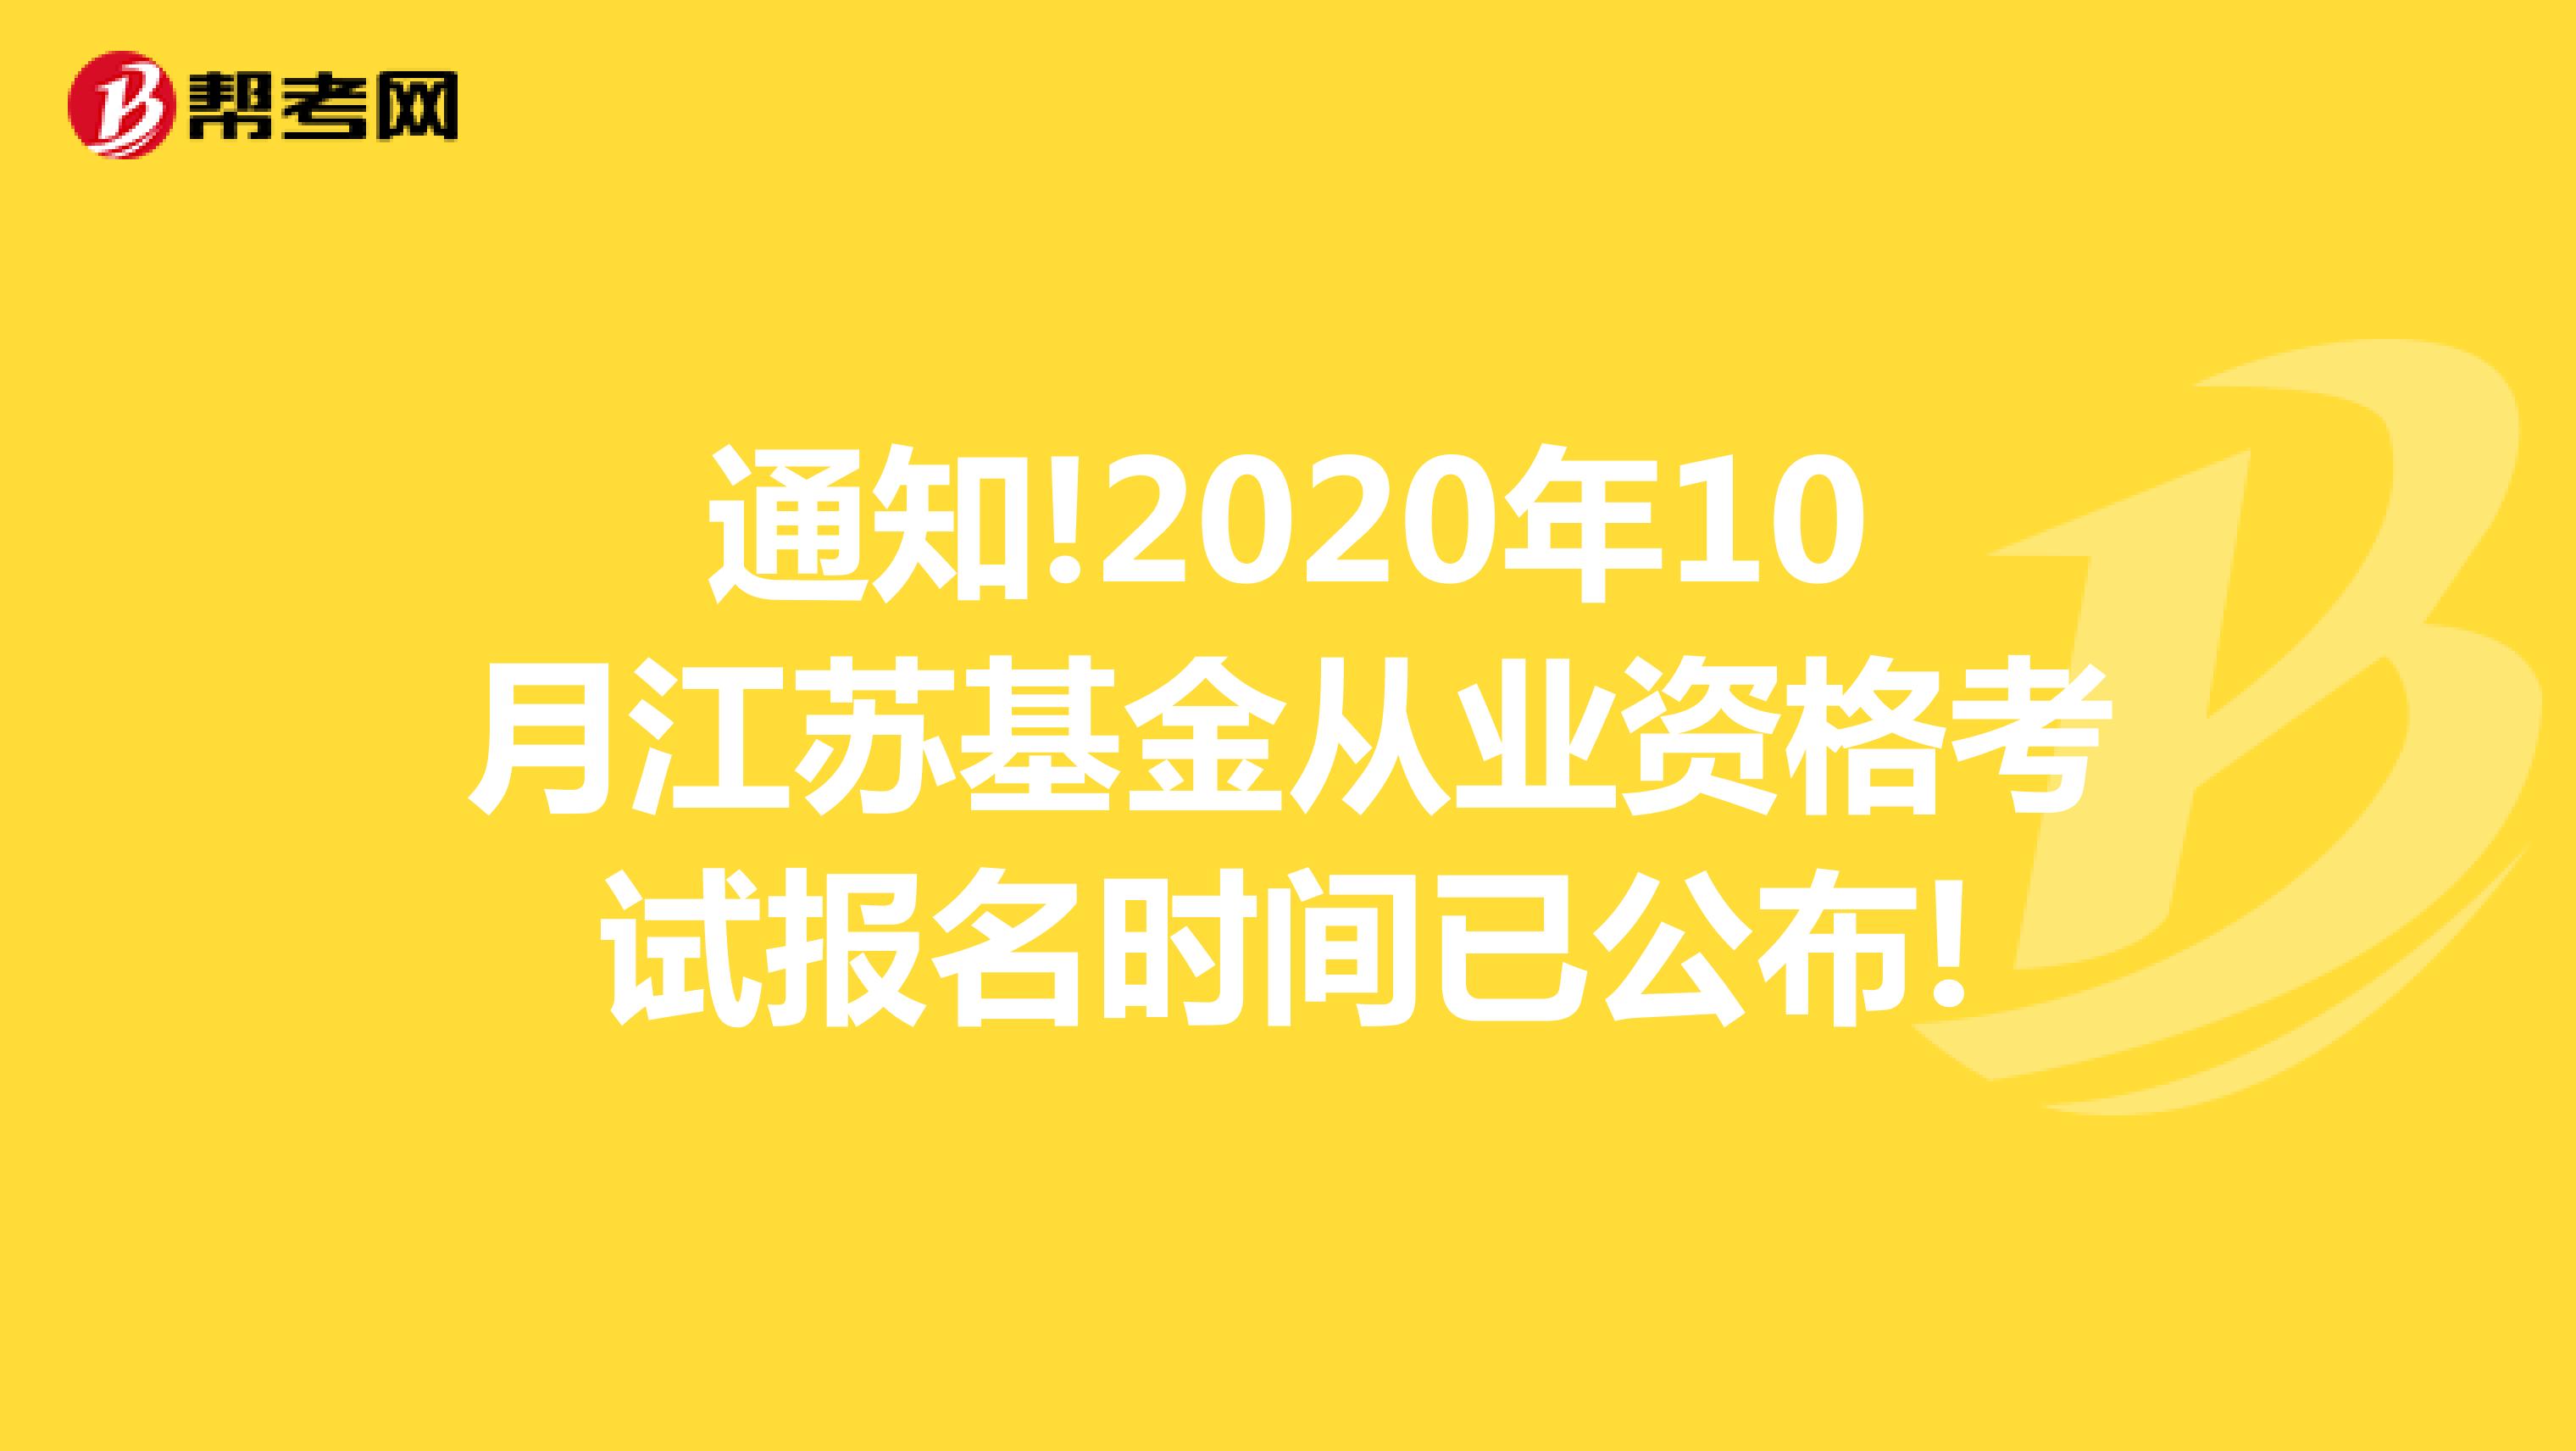 通知!2020年10月江苏基金从业资格考试报名时间已公布!